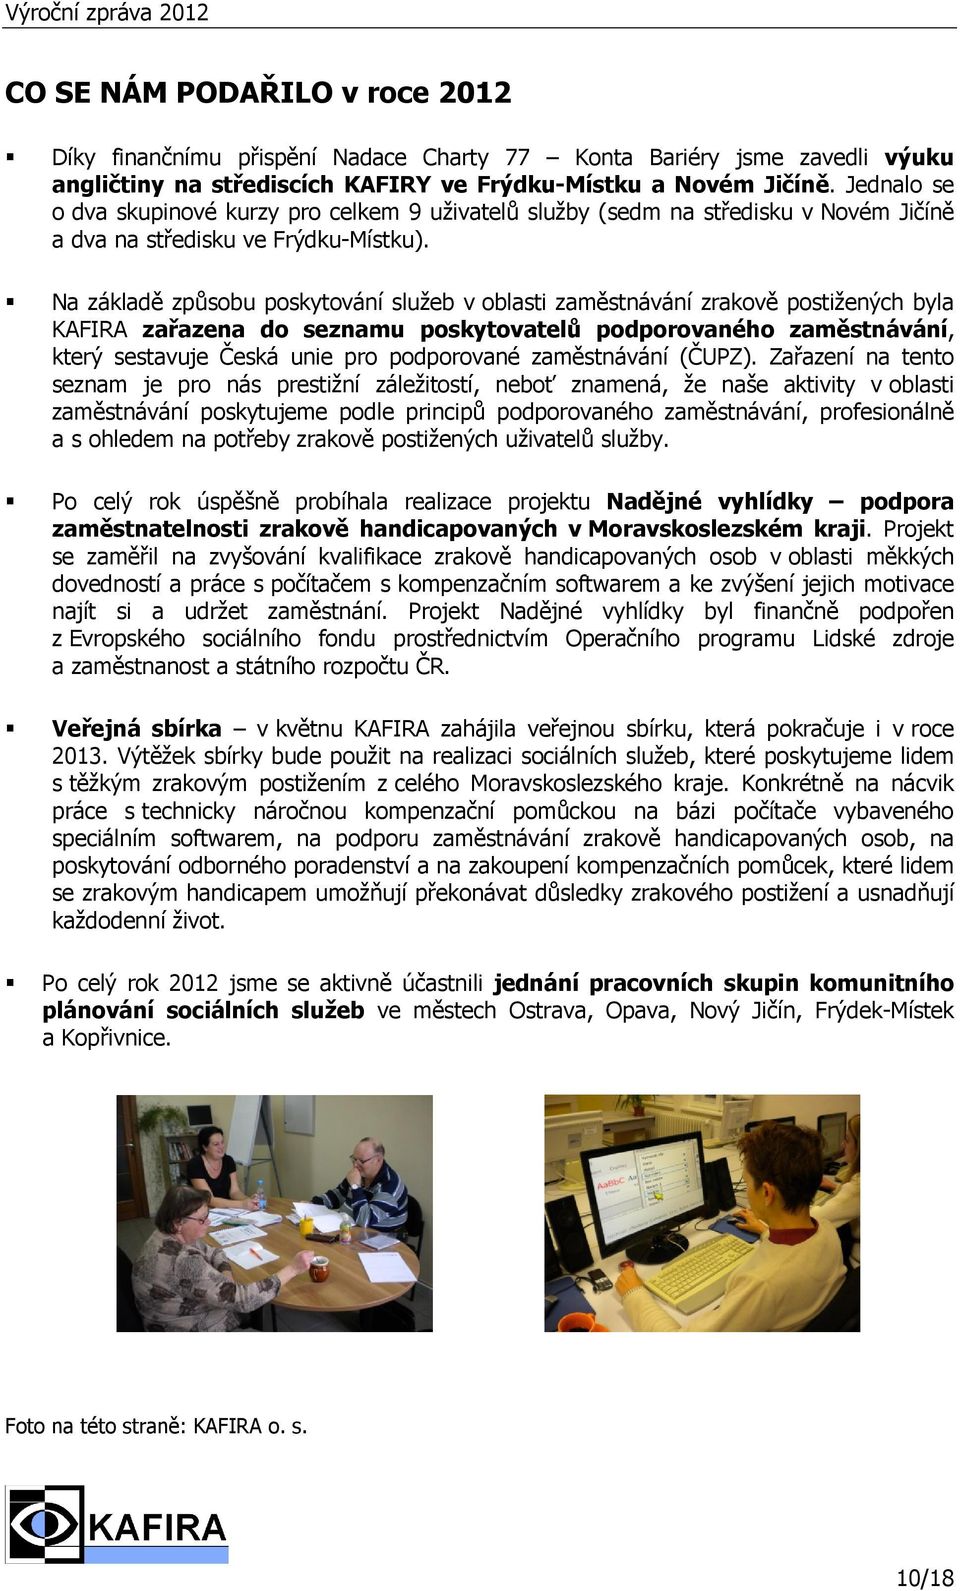 Na základě způsobu poskytování služeb v oblasti zaměstnávání zrakově postižených byla KAFIRA zařazena do seznamu poskytovatelů podporovaného zaměstnávání, který sestavuje Česká unie pro podporované